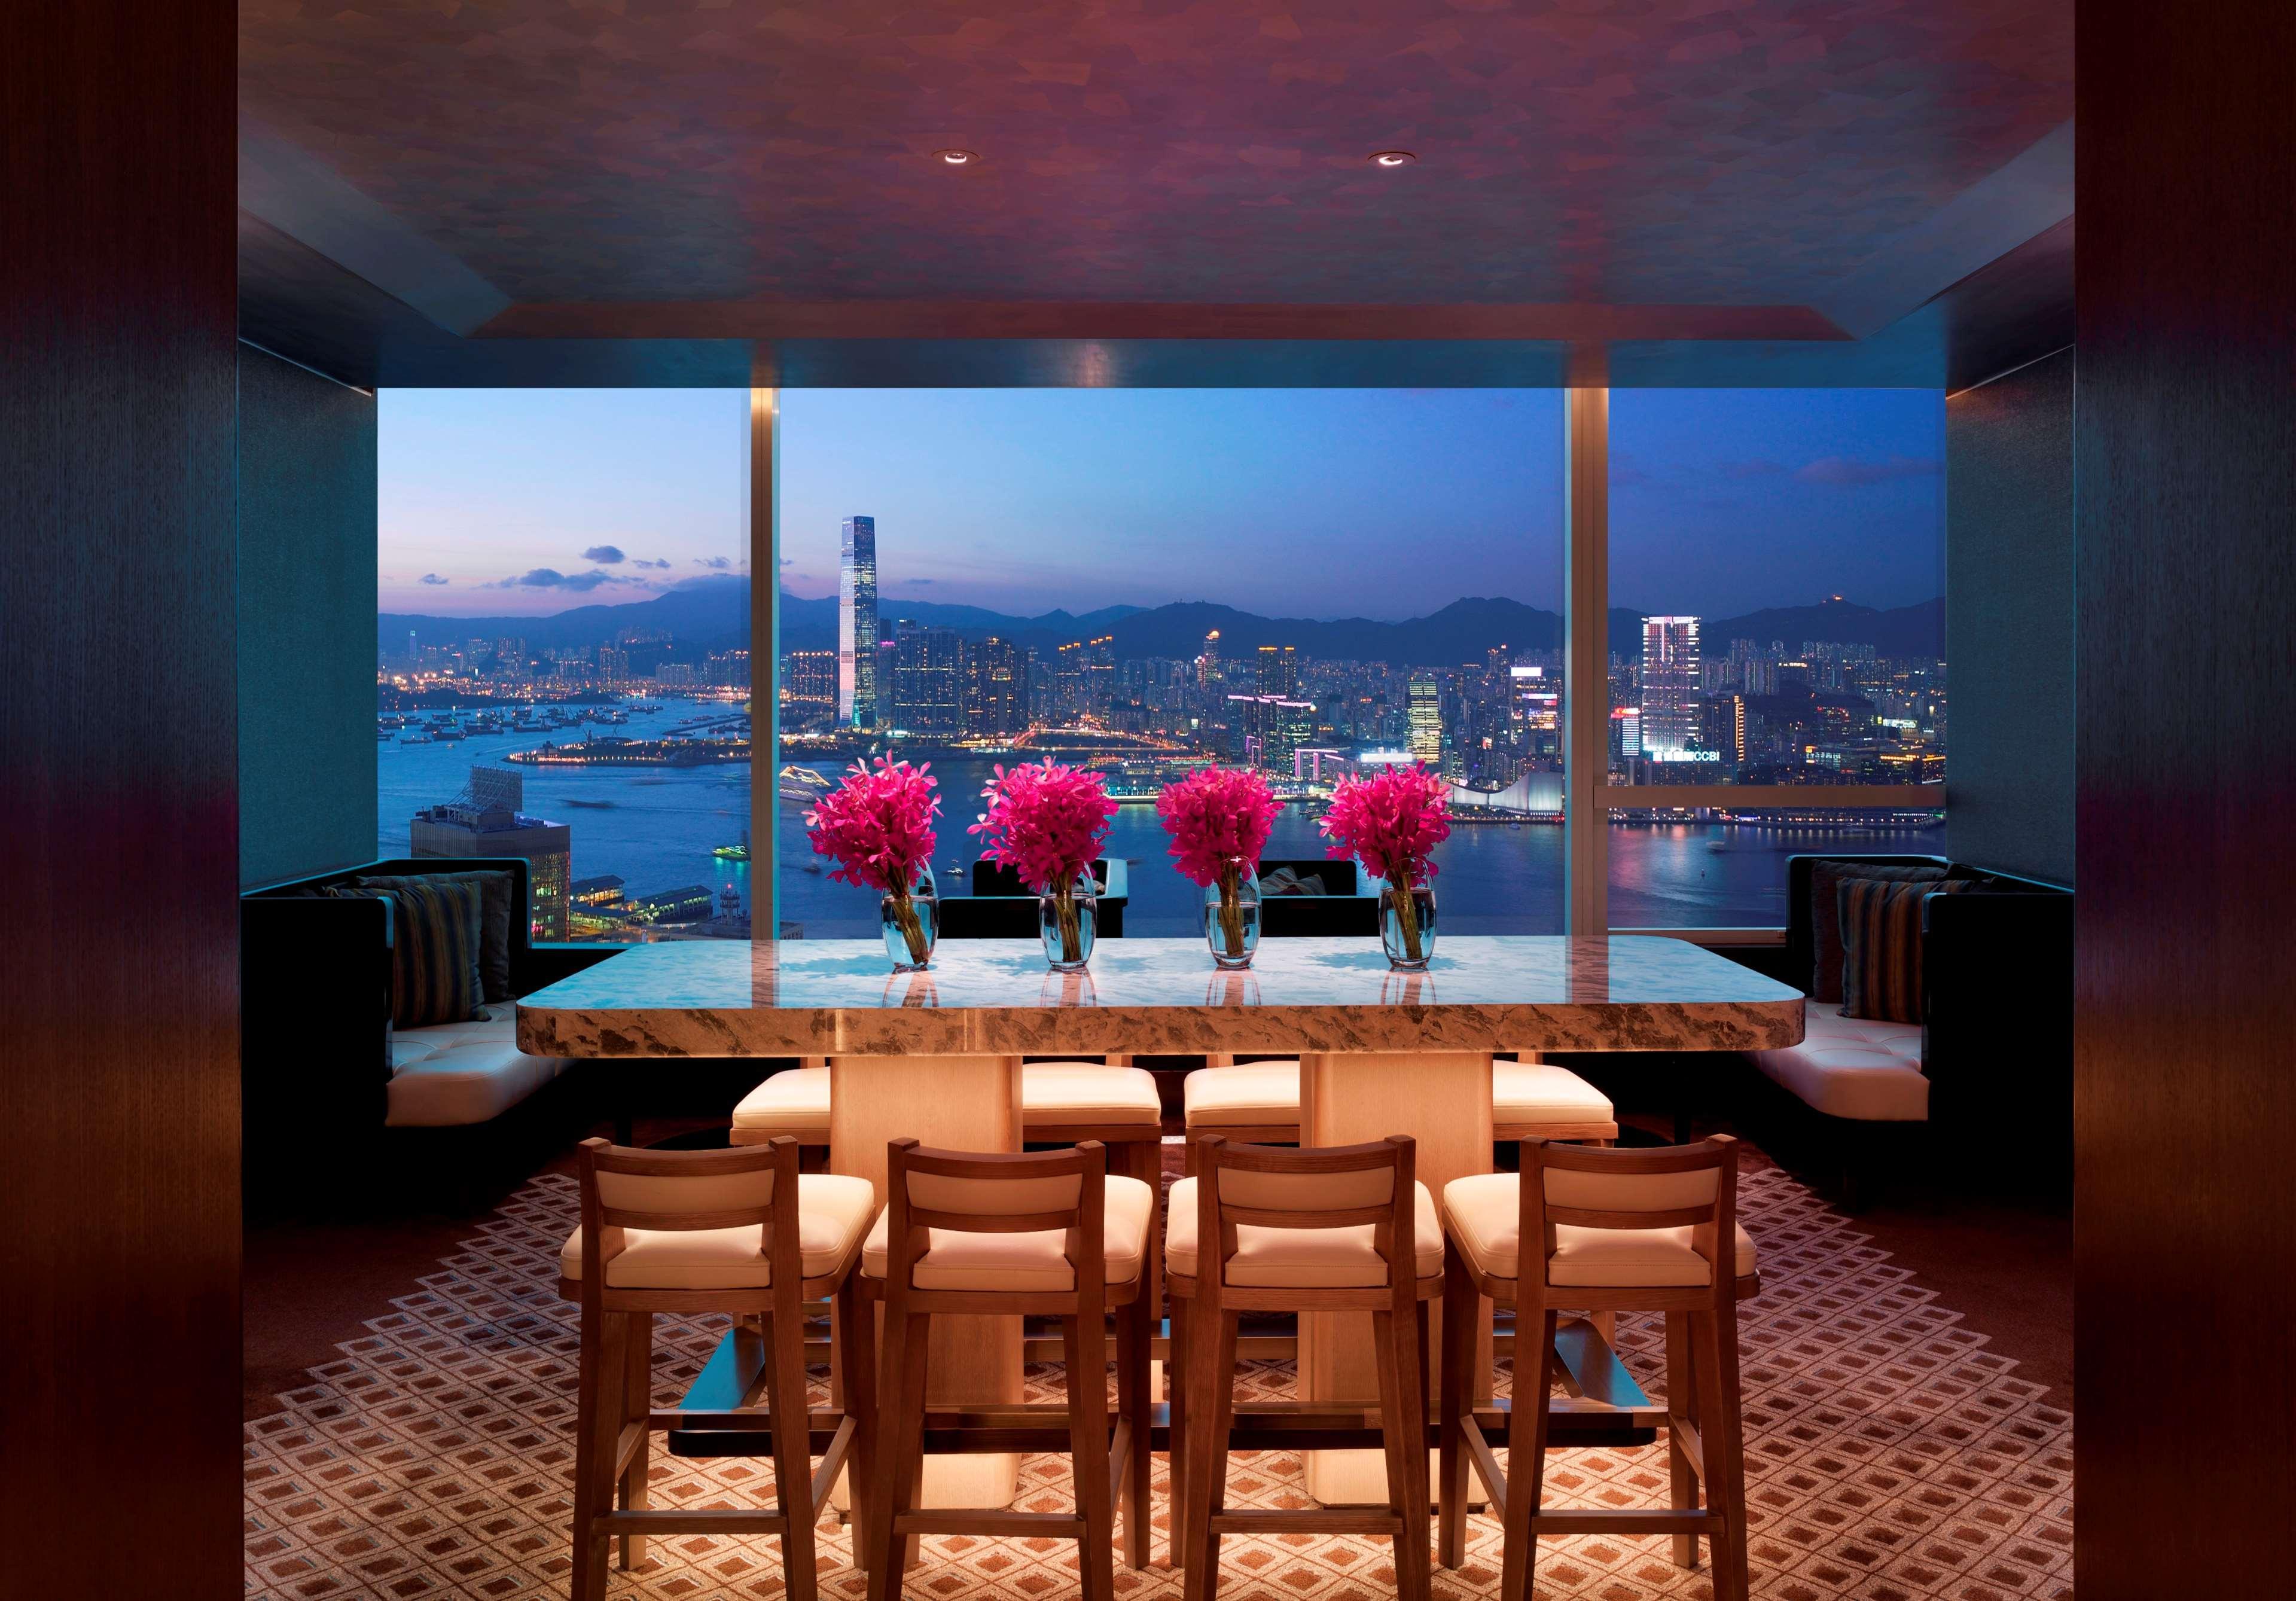 Conrad Hong Kong Hotel Exterior photo